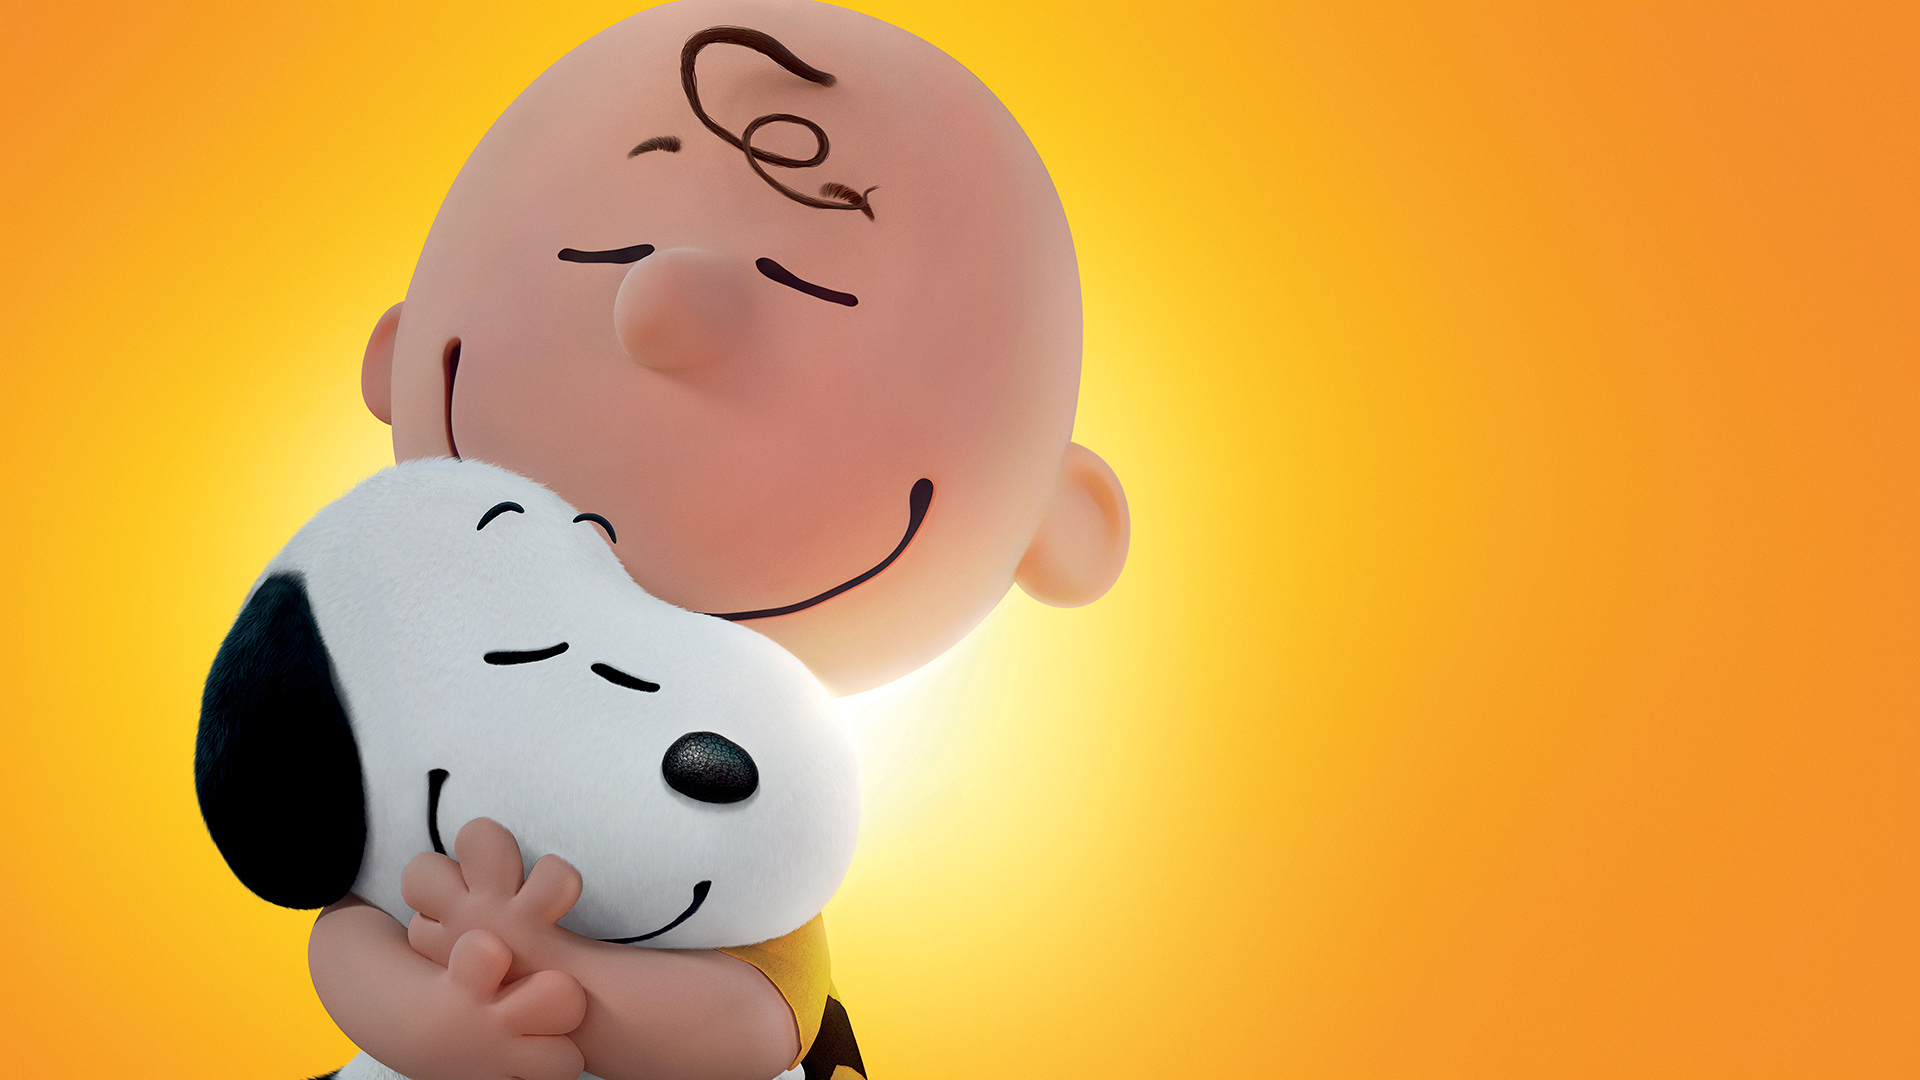 Snoopy Charlie Brown 1920x1080